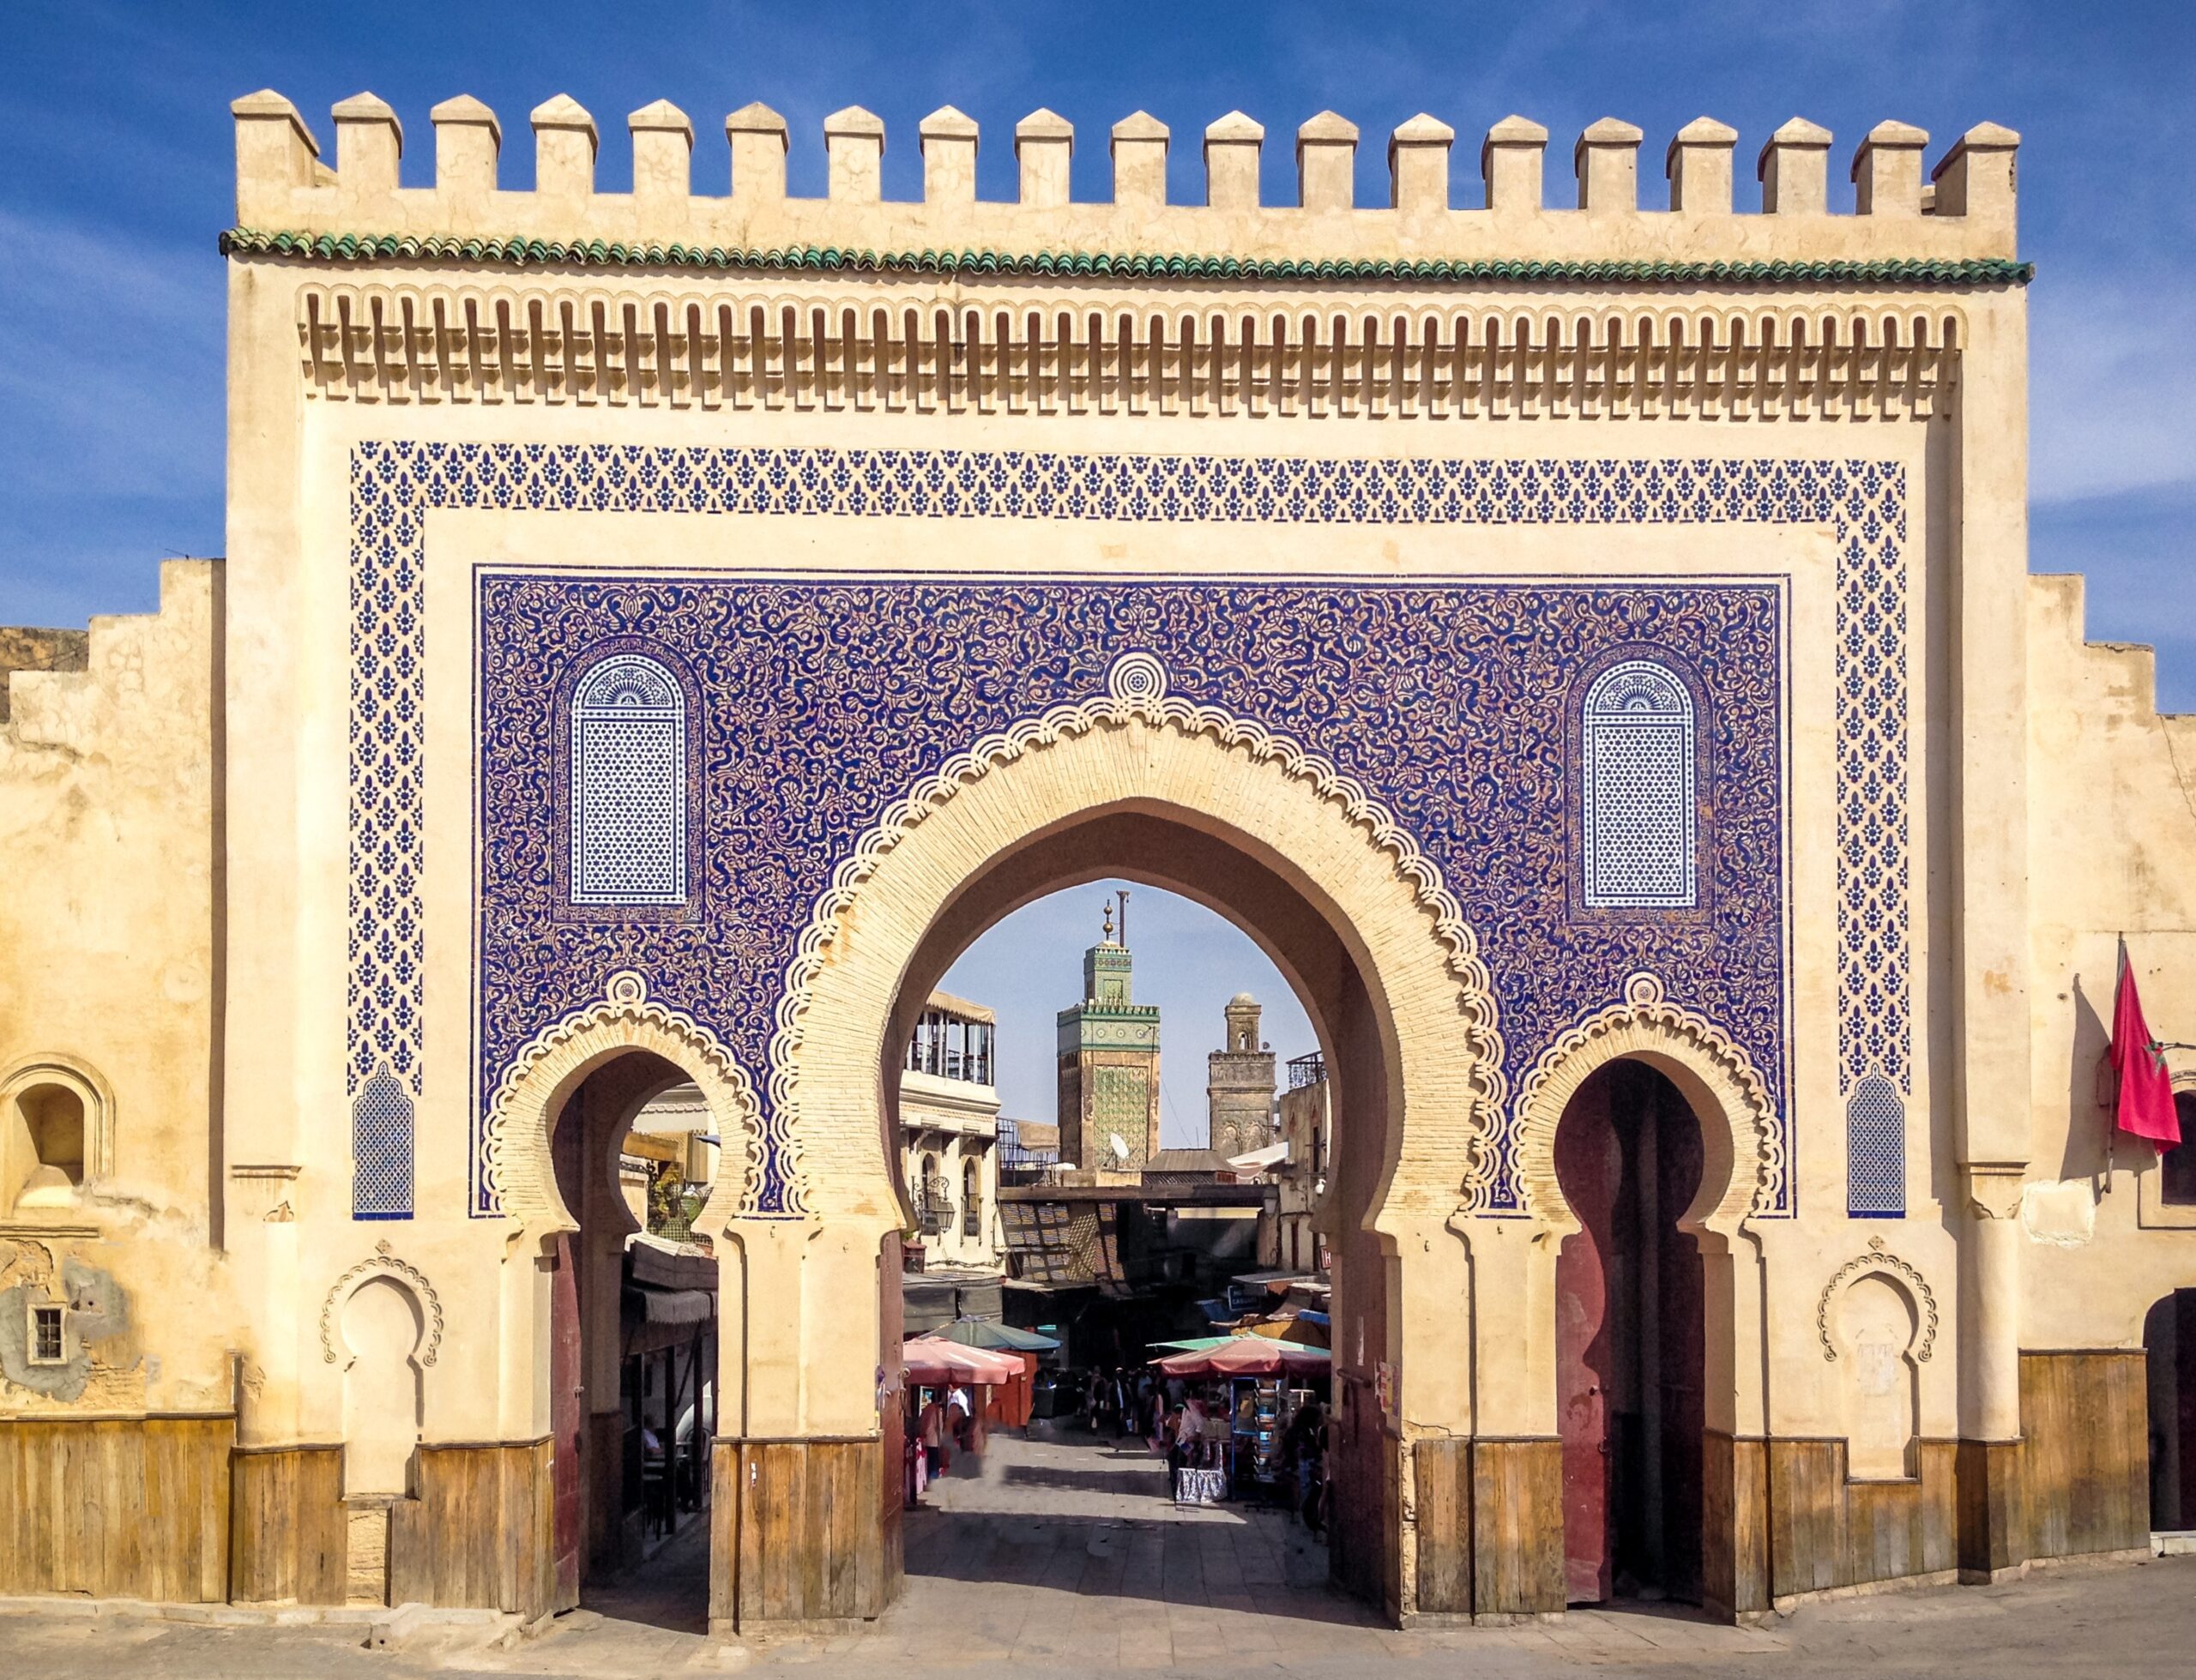 Marocco, Grand Tour Luoghi d'Arte